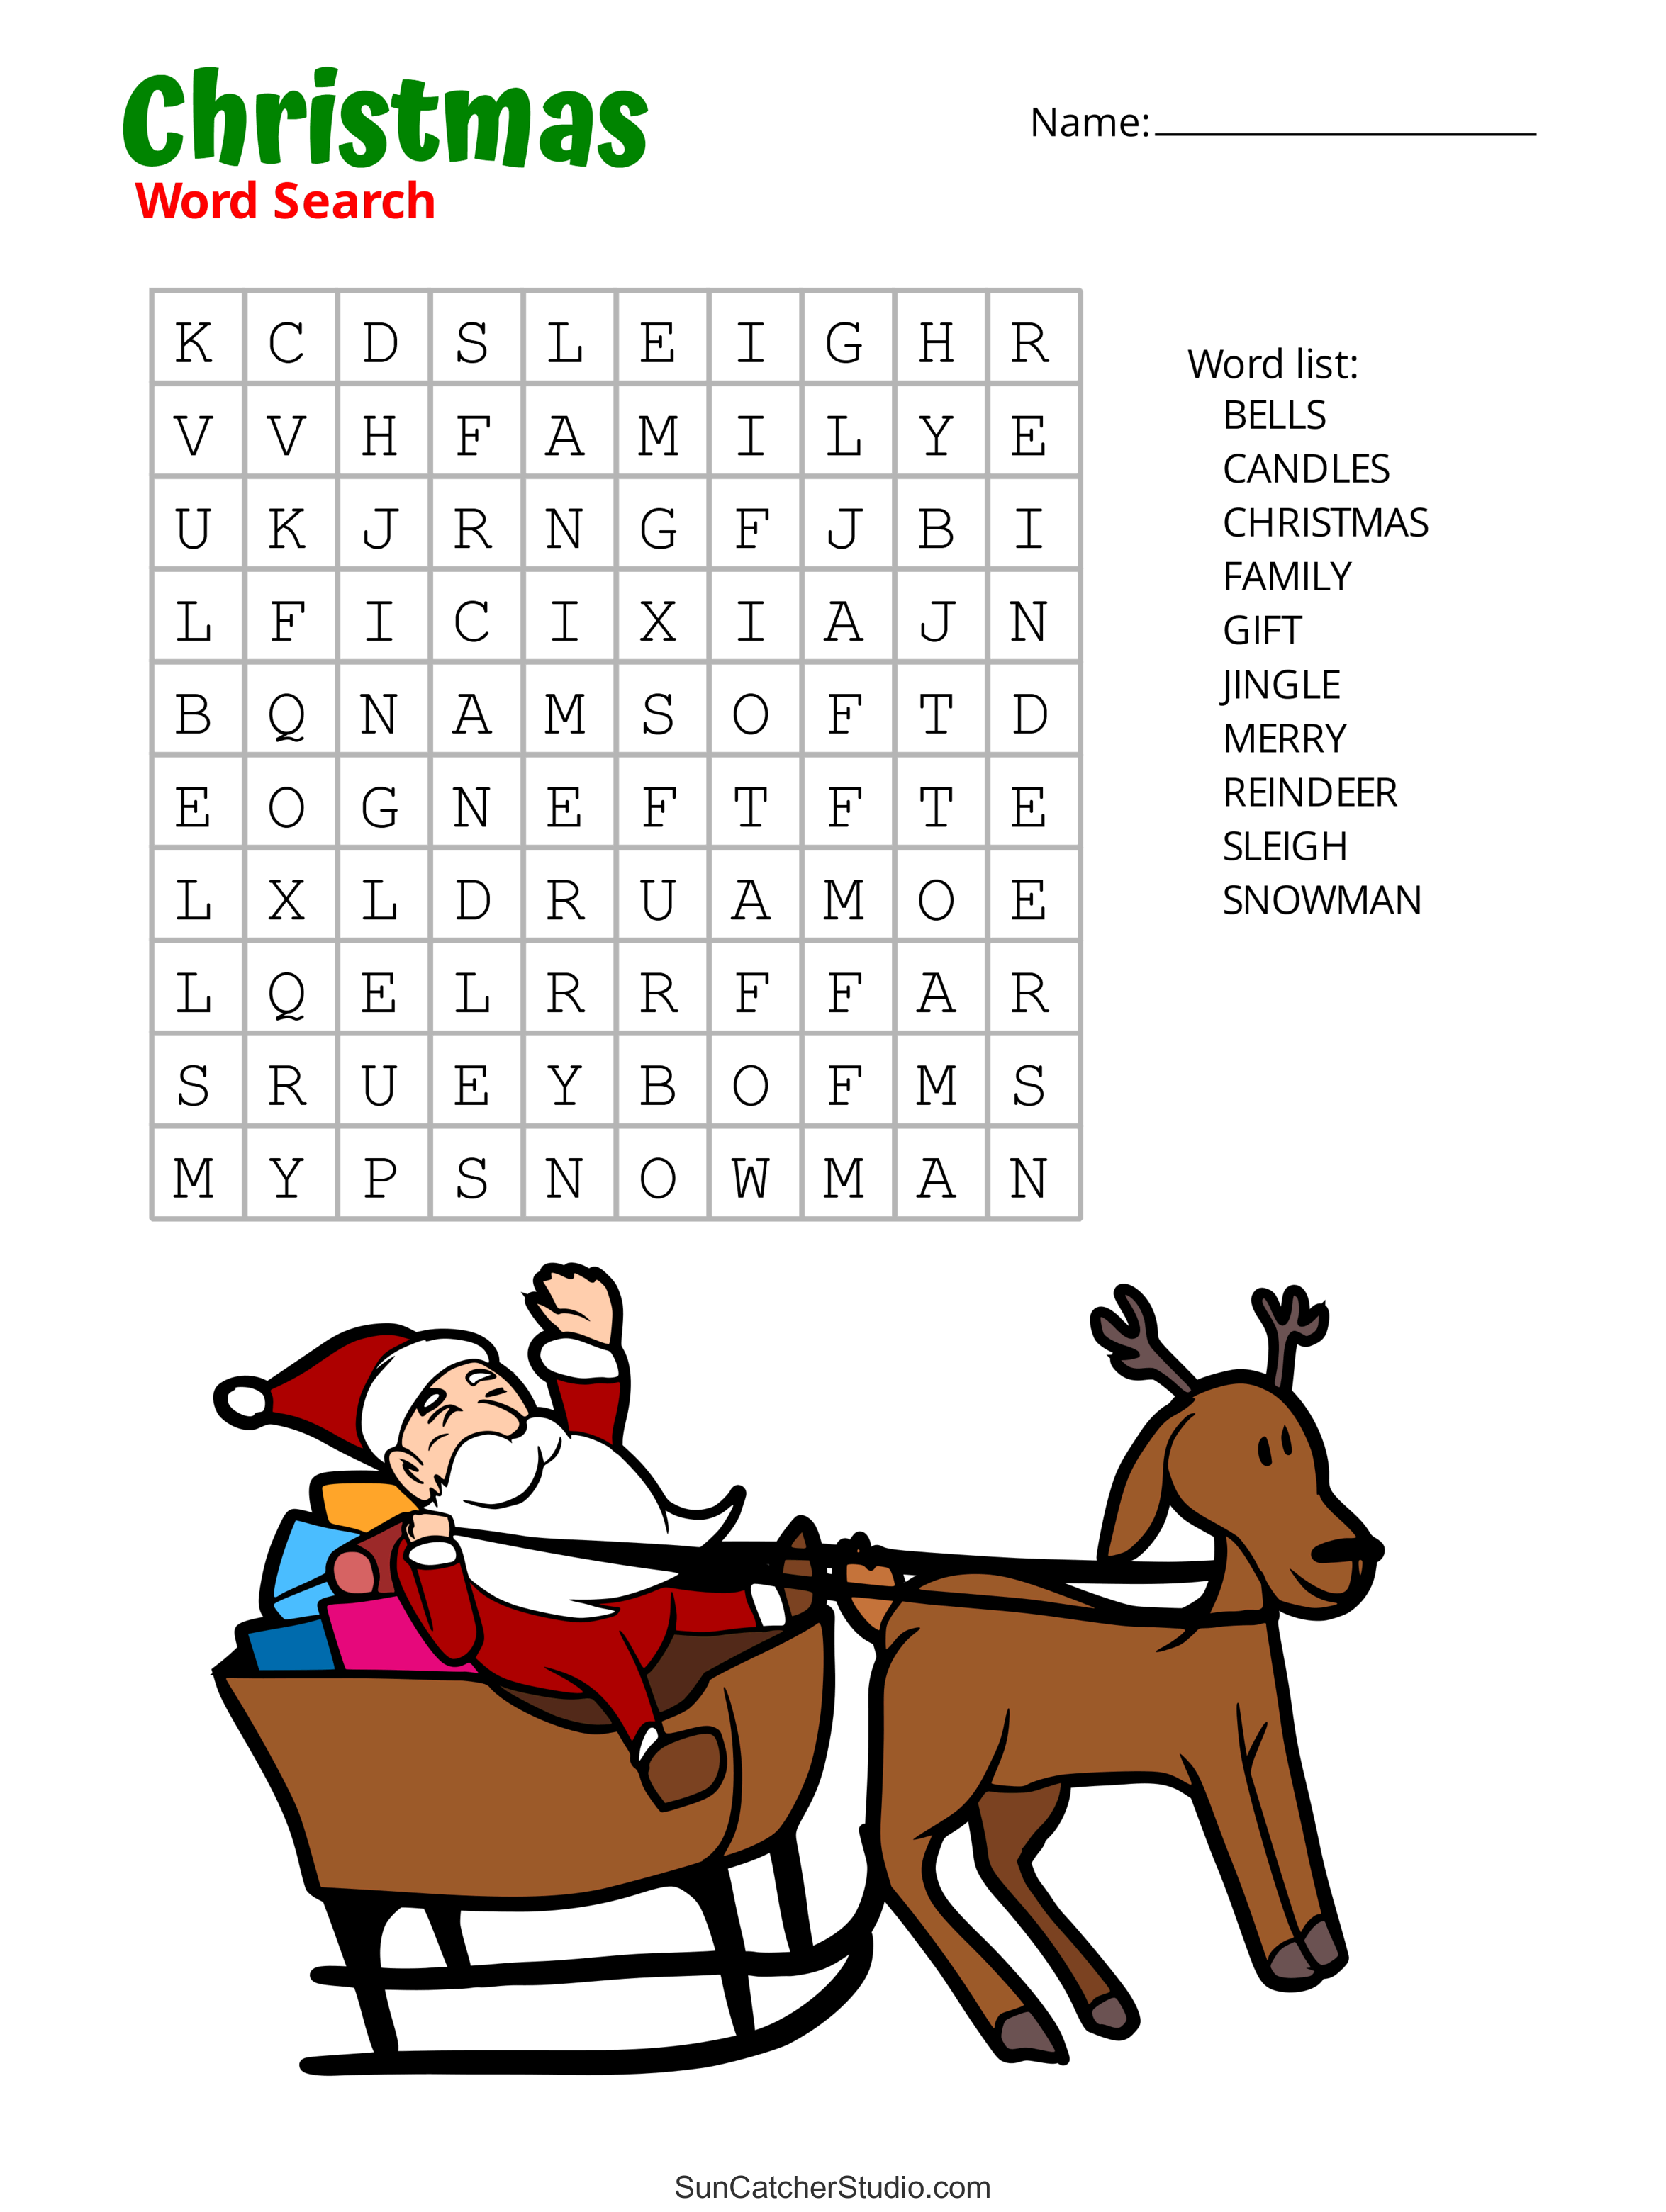 d-biteur-mal-de-mer-shabituer-christmas-word-search-puzzle-abattage